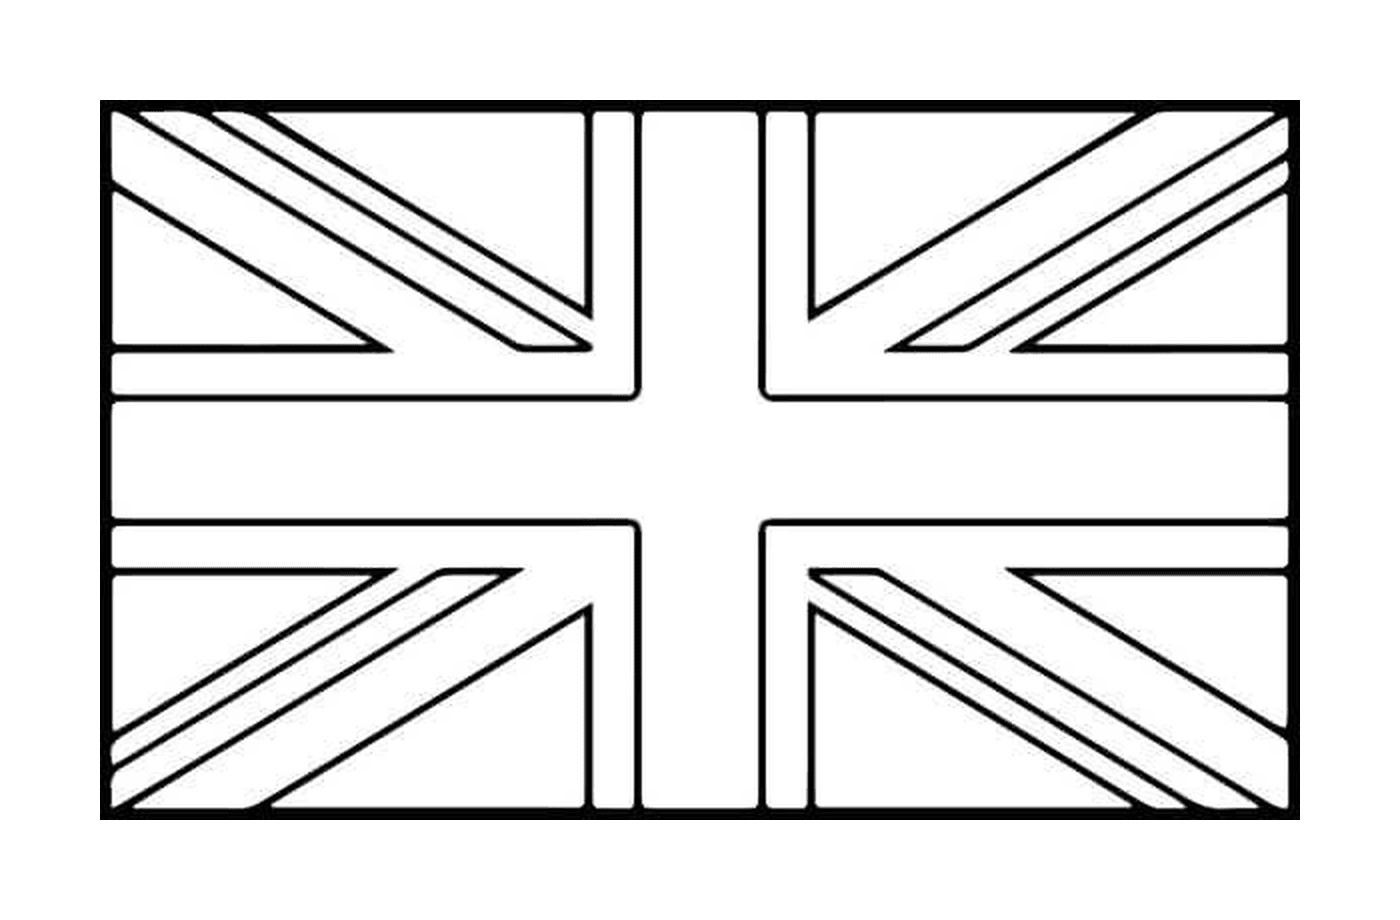  Uma bandeira britânica 